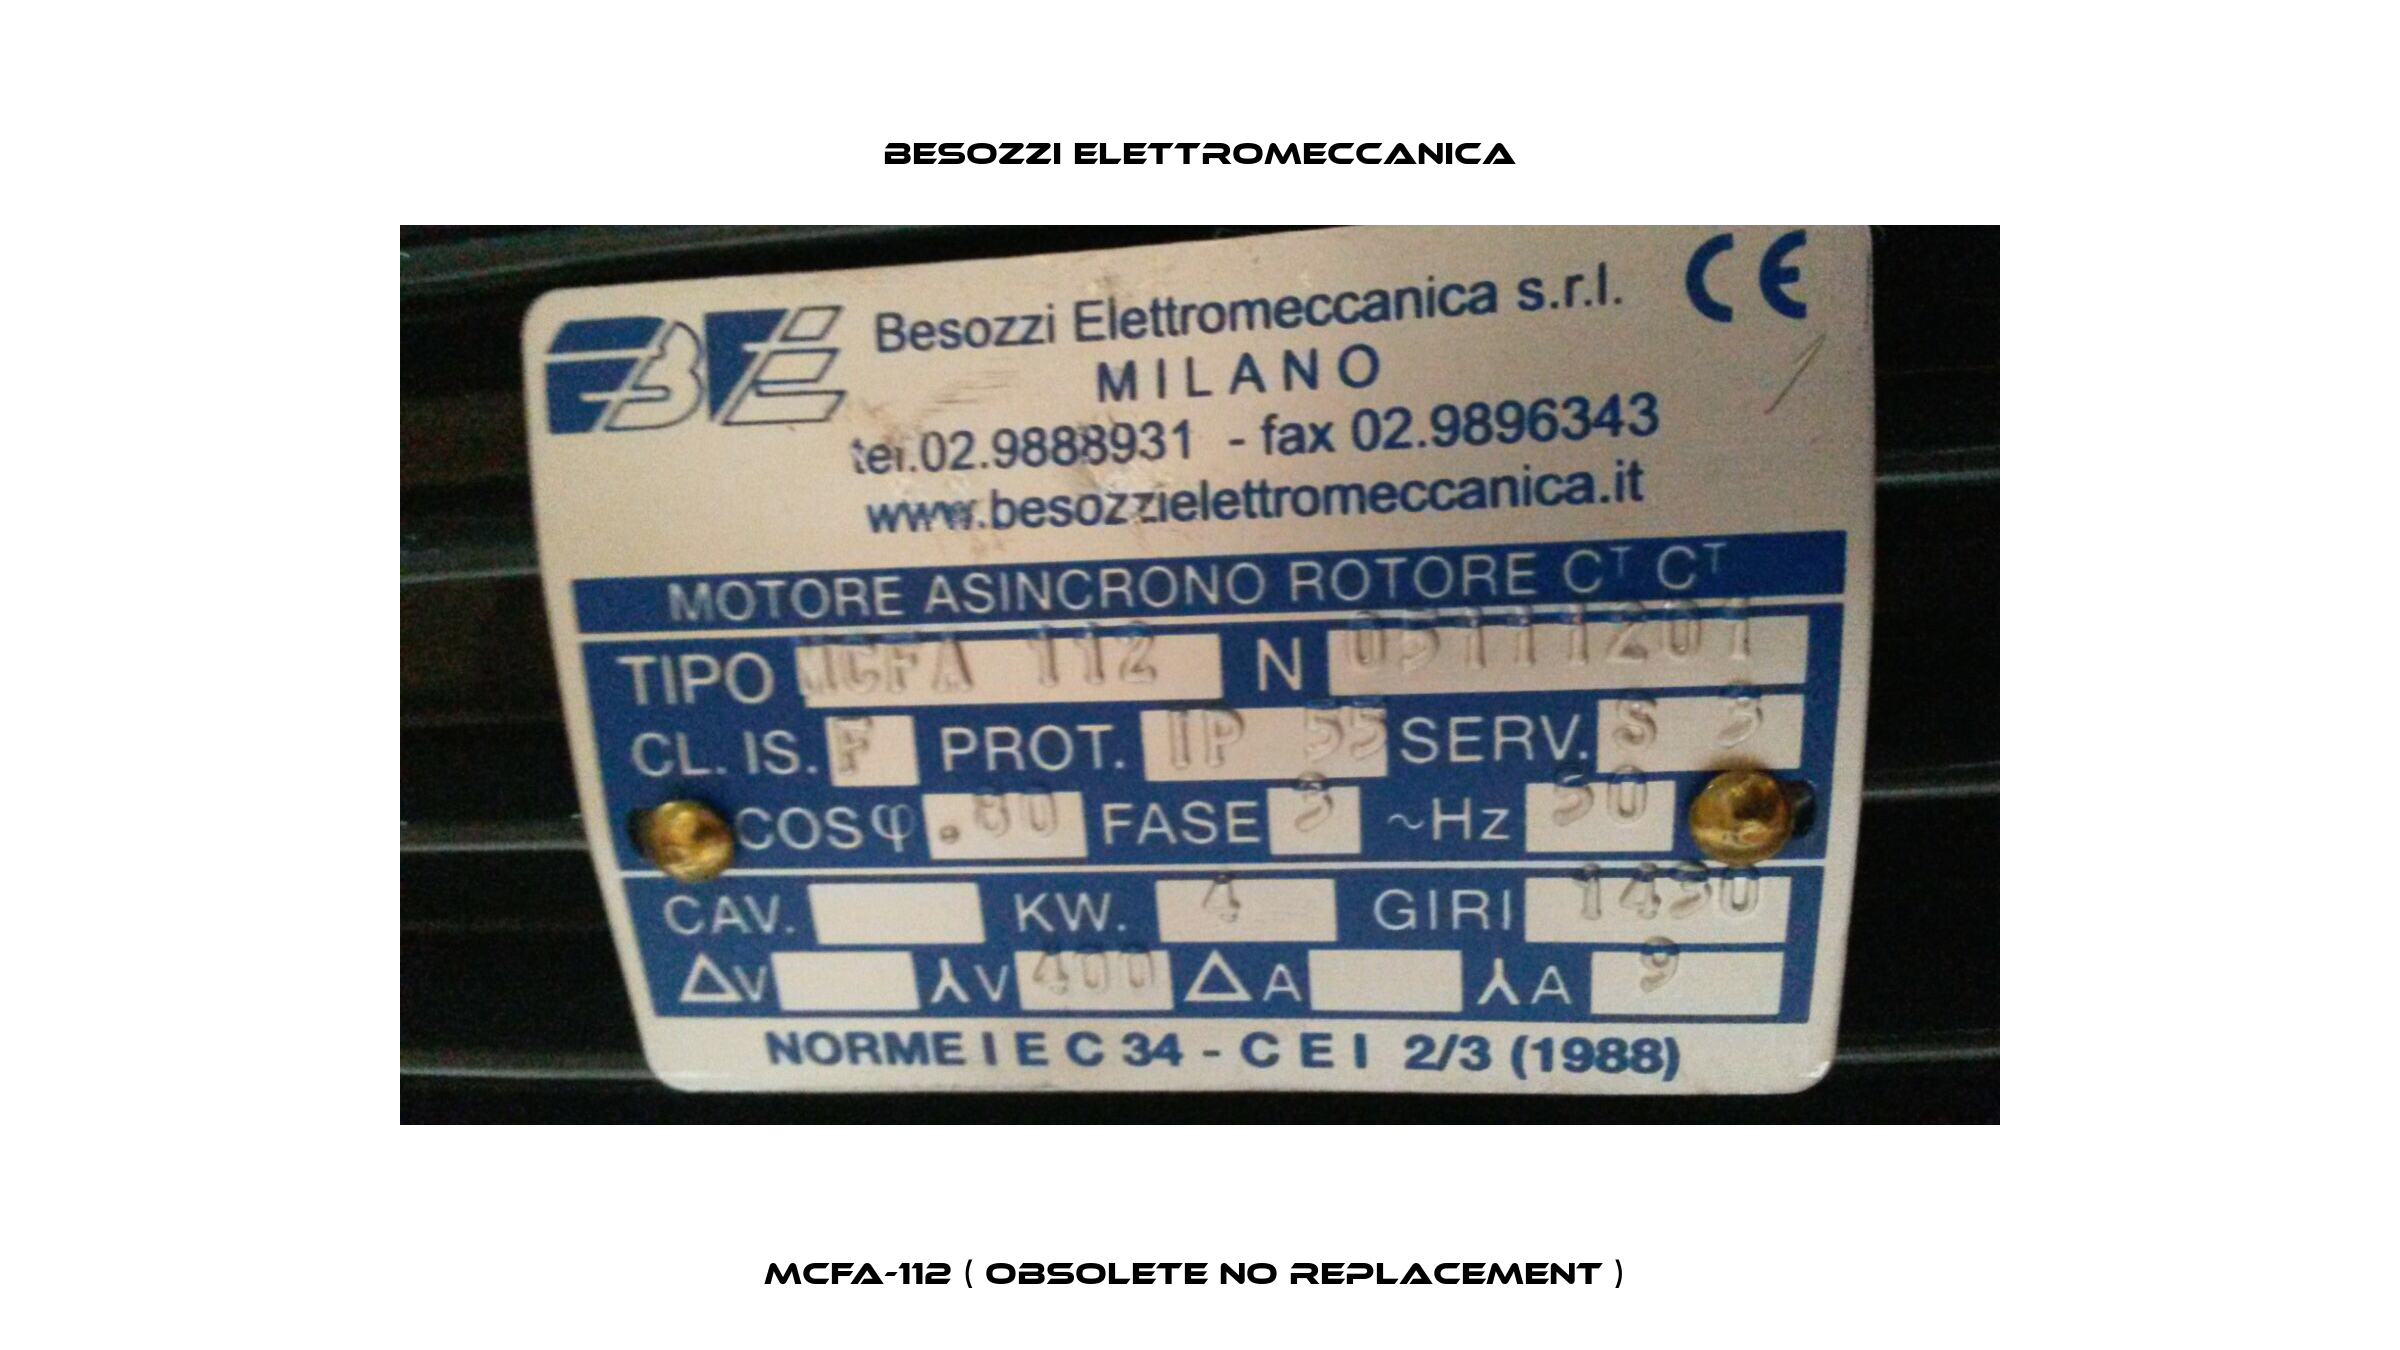 MCFA-112 ( obsolete no replacement )  Besozzi Elettromeccanica